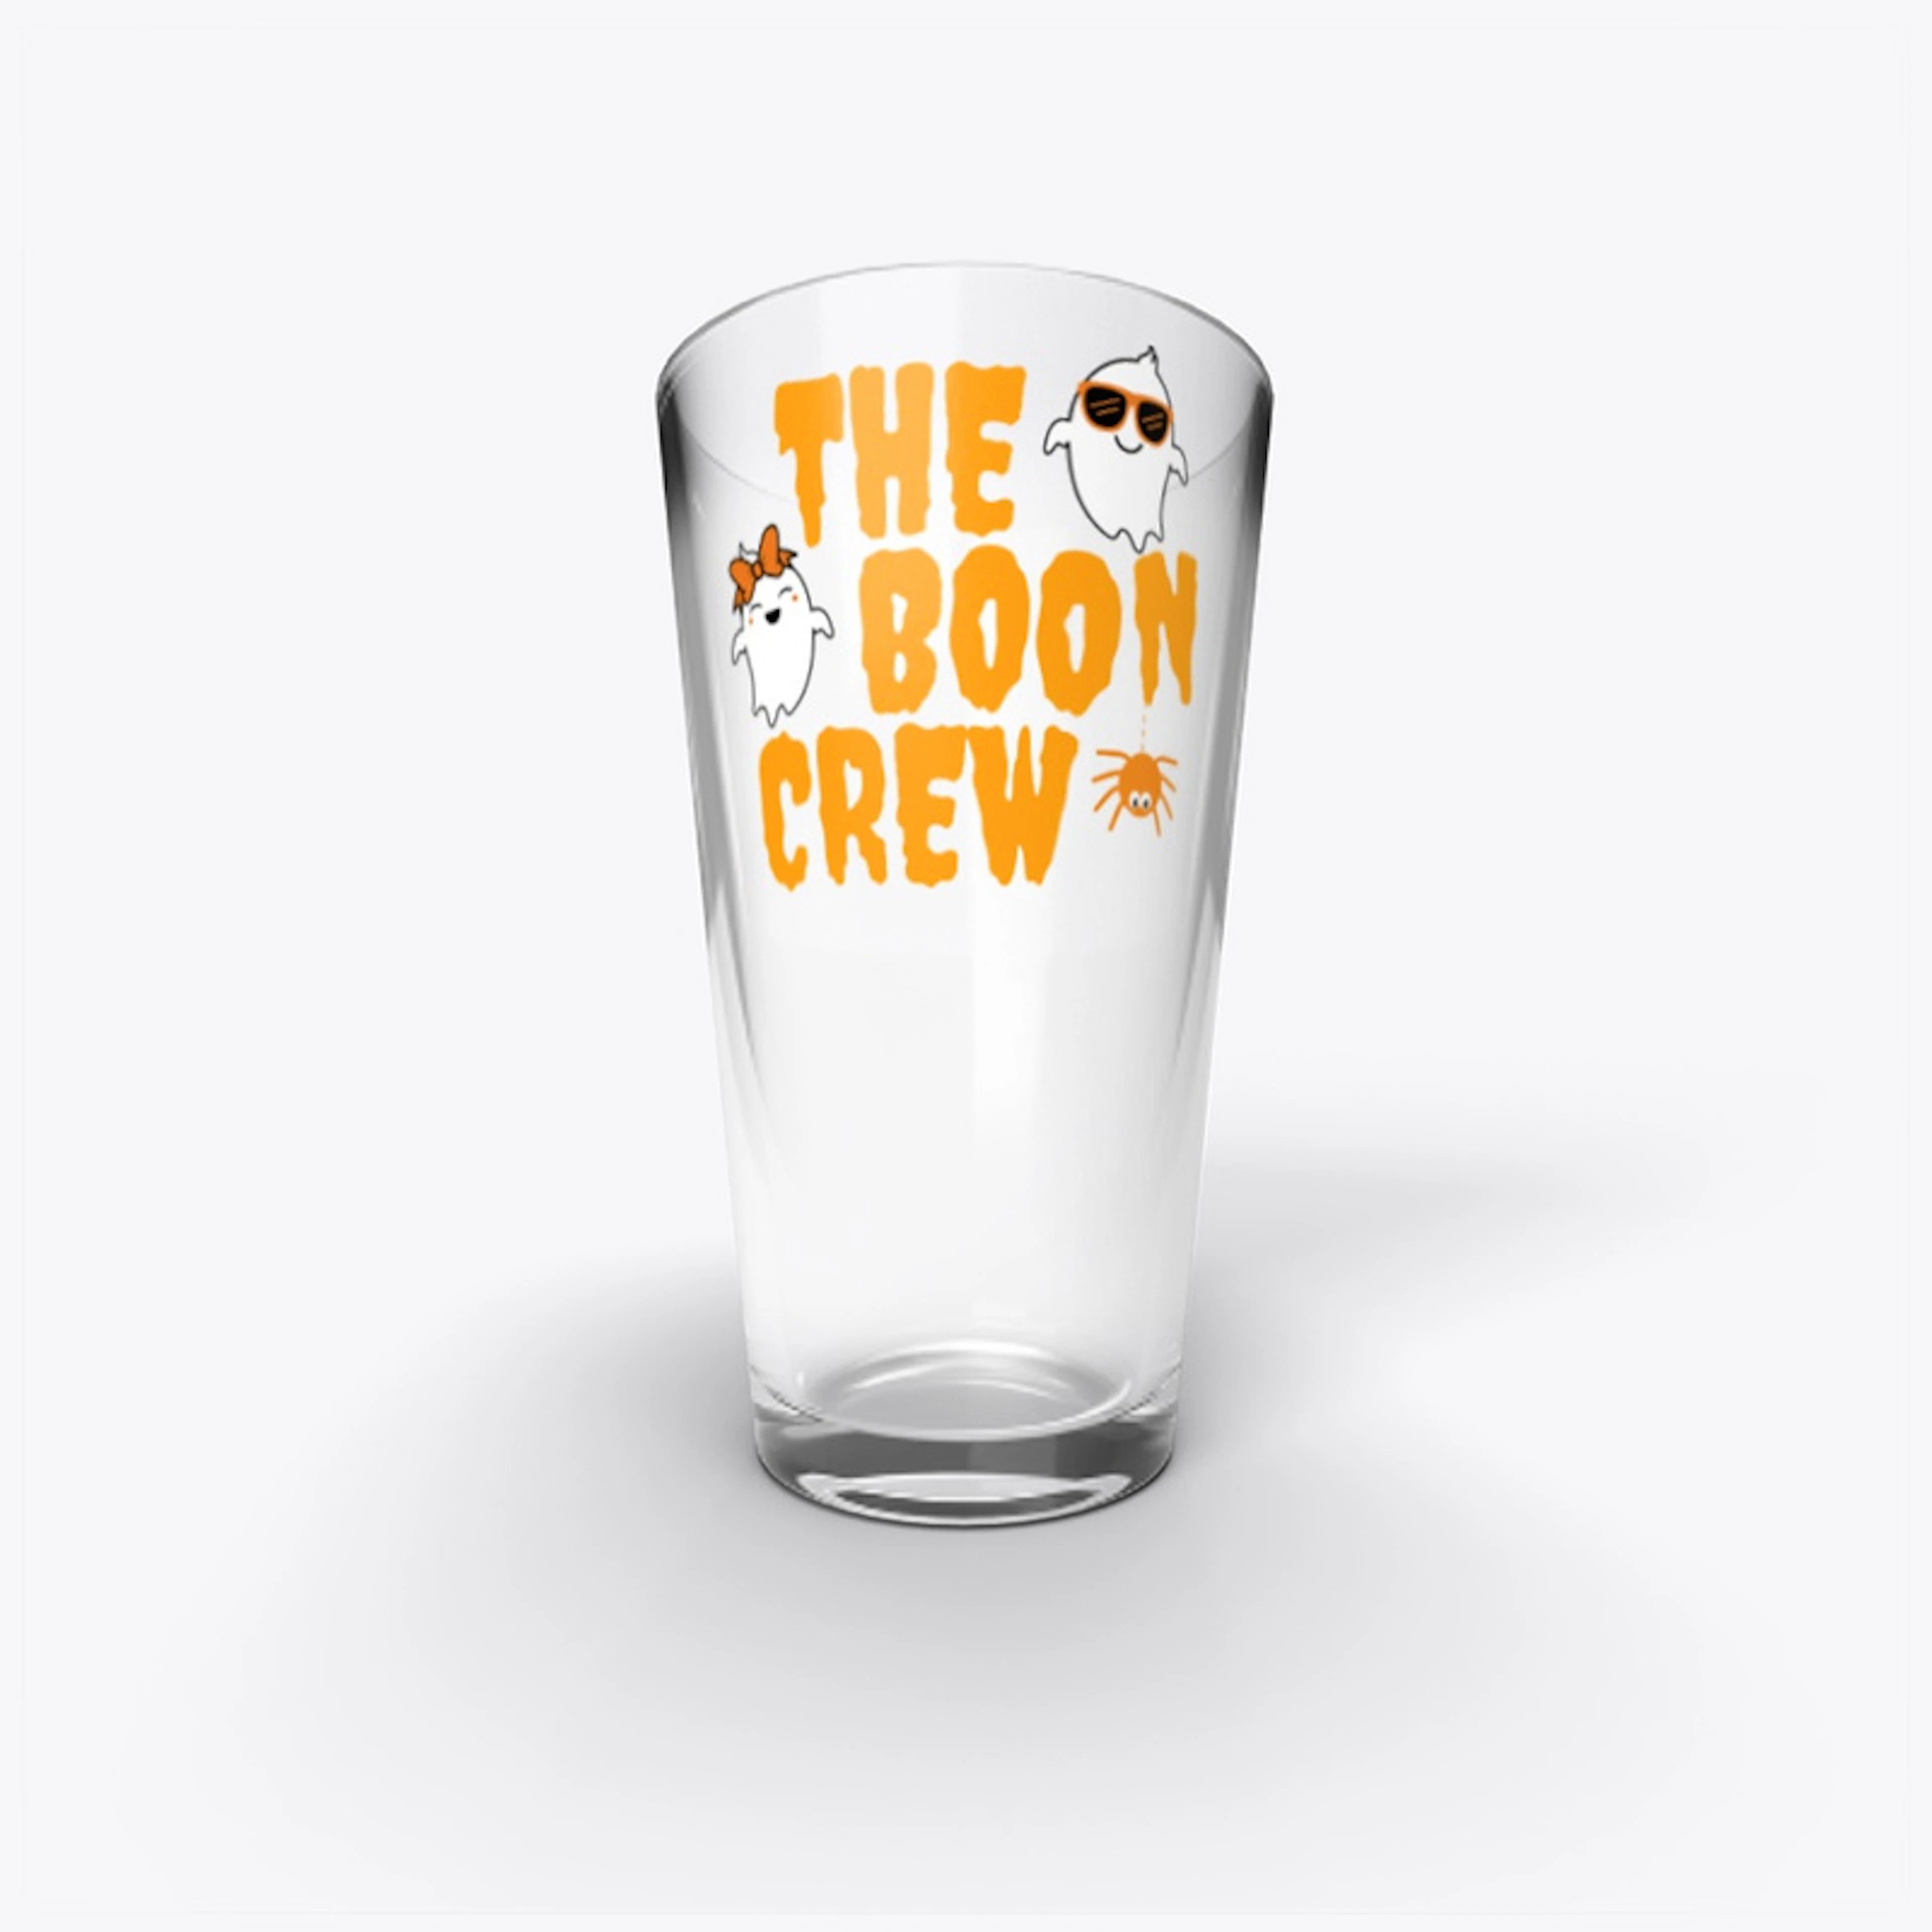 Da Spoopy Boon Crew!